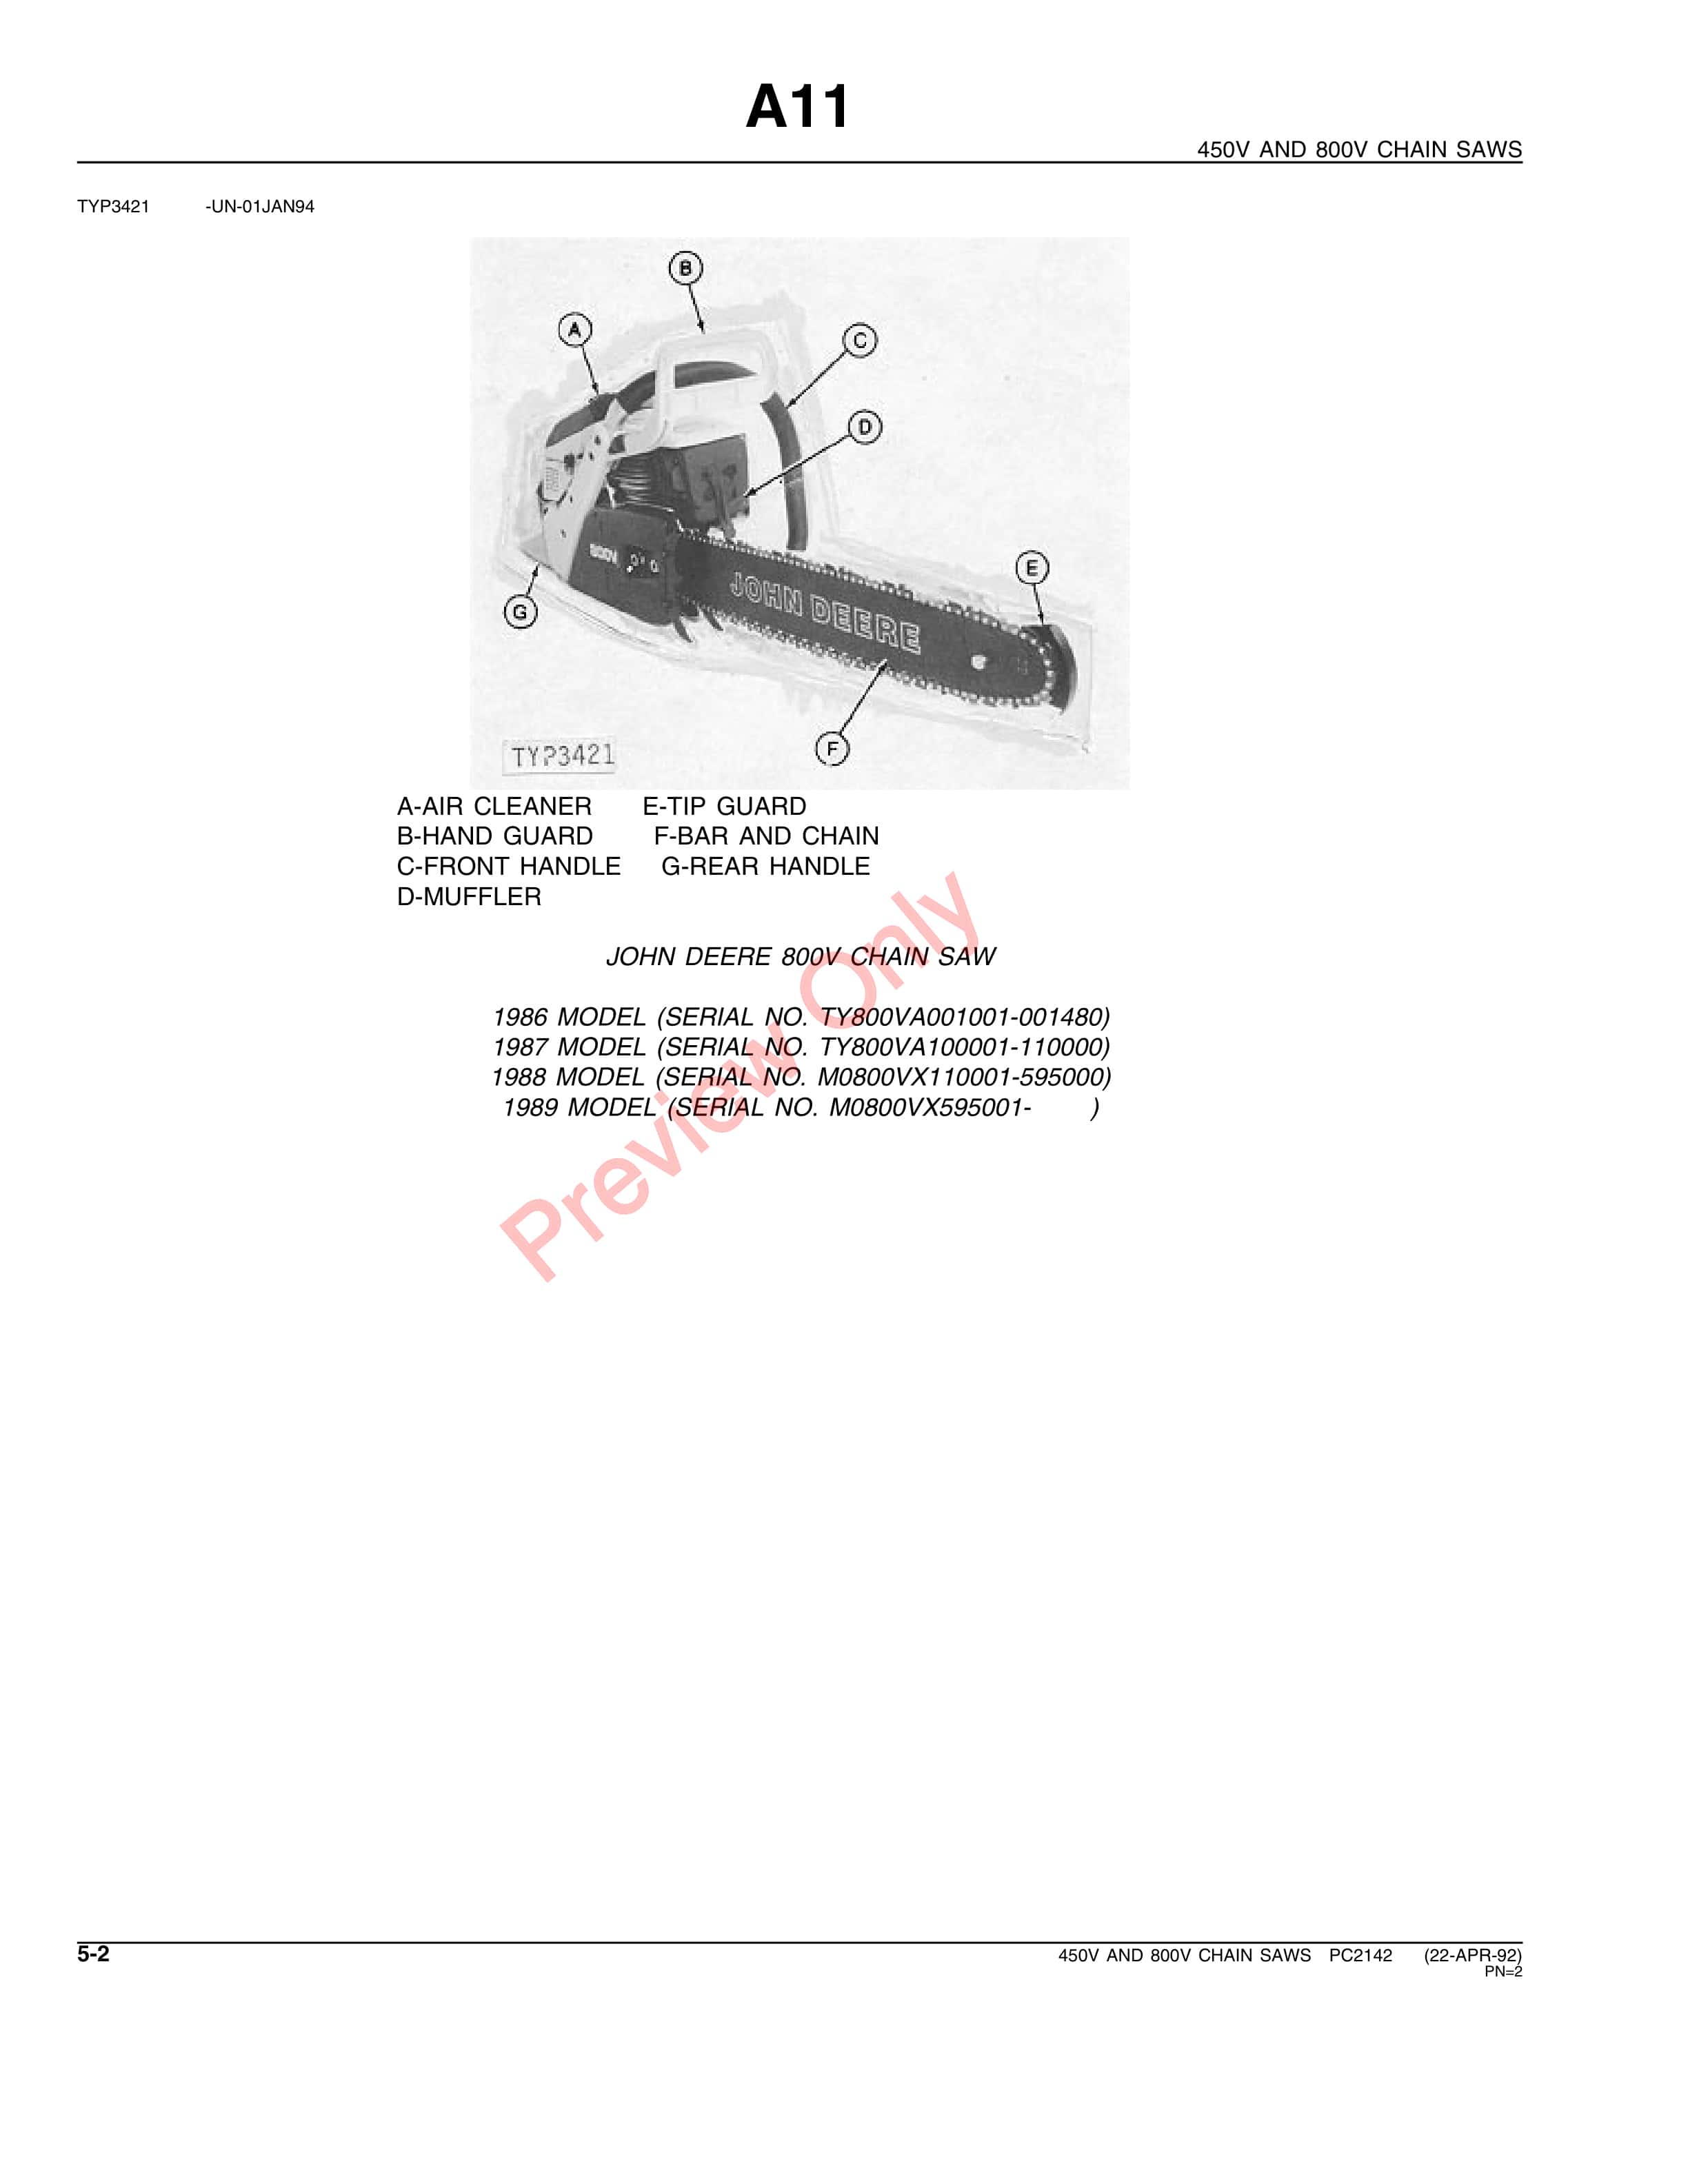 John Deere 450V, 800V Chain Saws Parts Catalog PC2142 22APR92-4